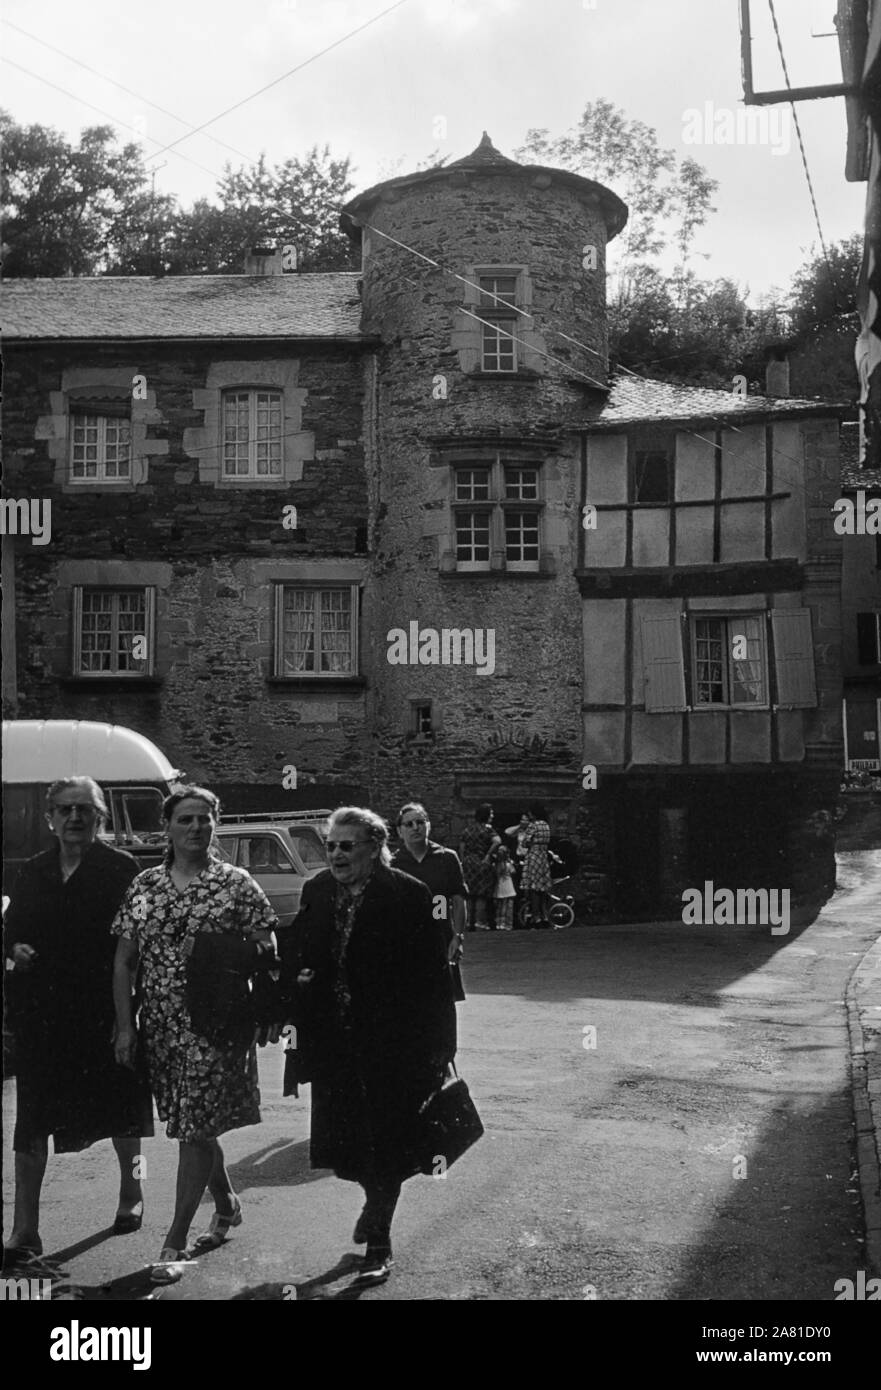 Promenading in piazza, Place du Centre, Coupiac, Aveyron, Occitanie, Francia. Scansione in bianco e nero film negativo, 1968 Foto Stock